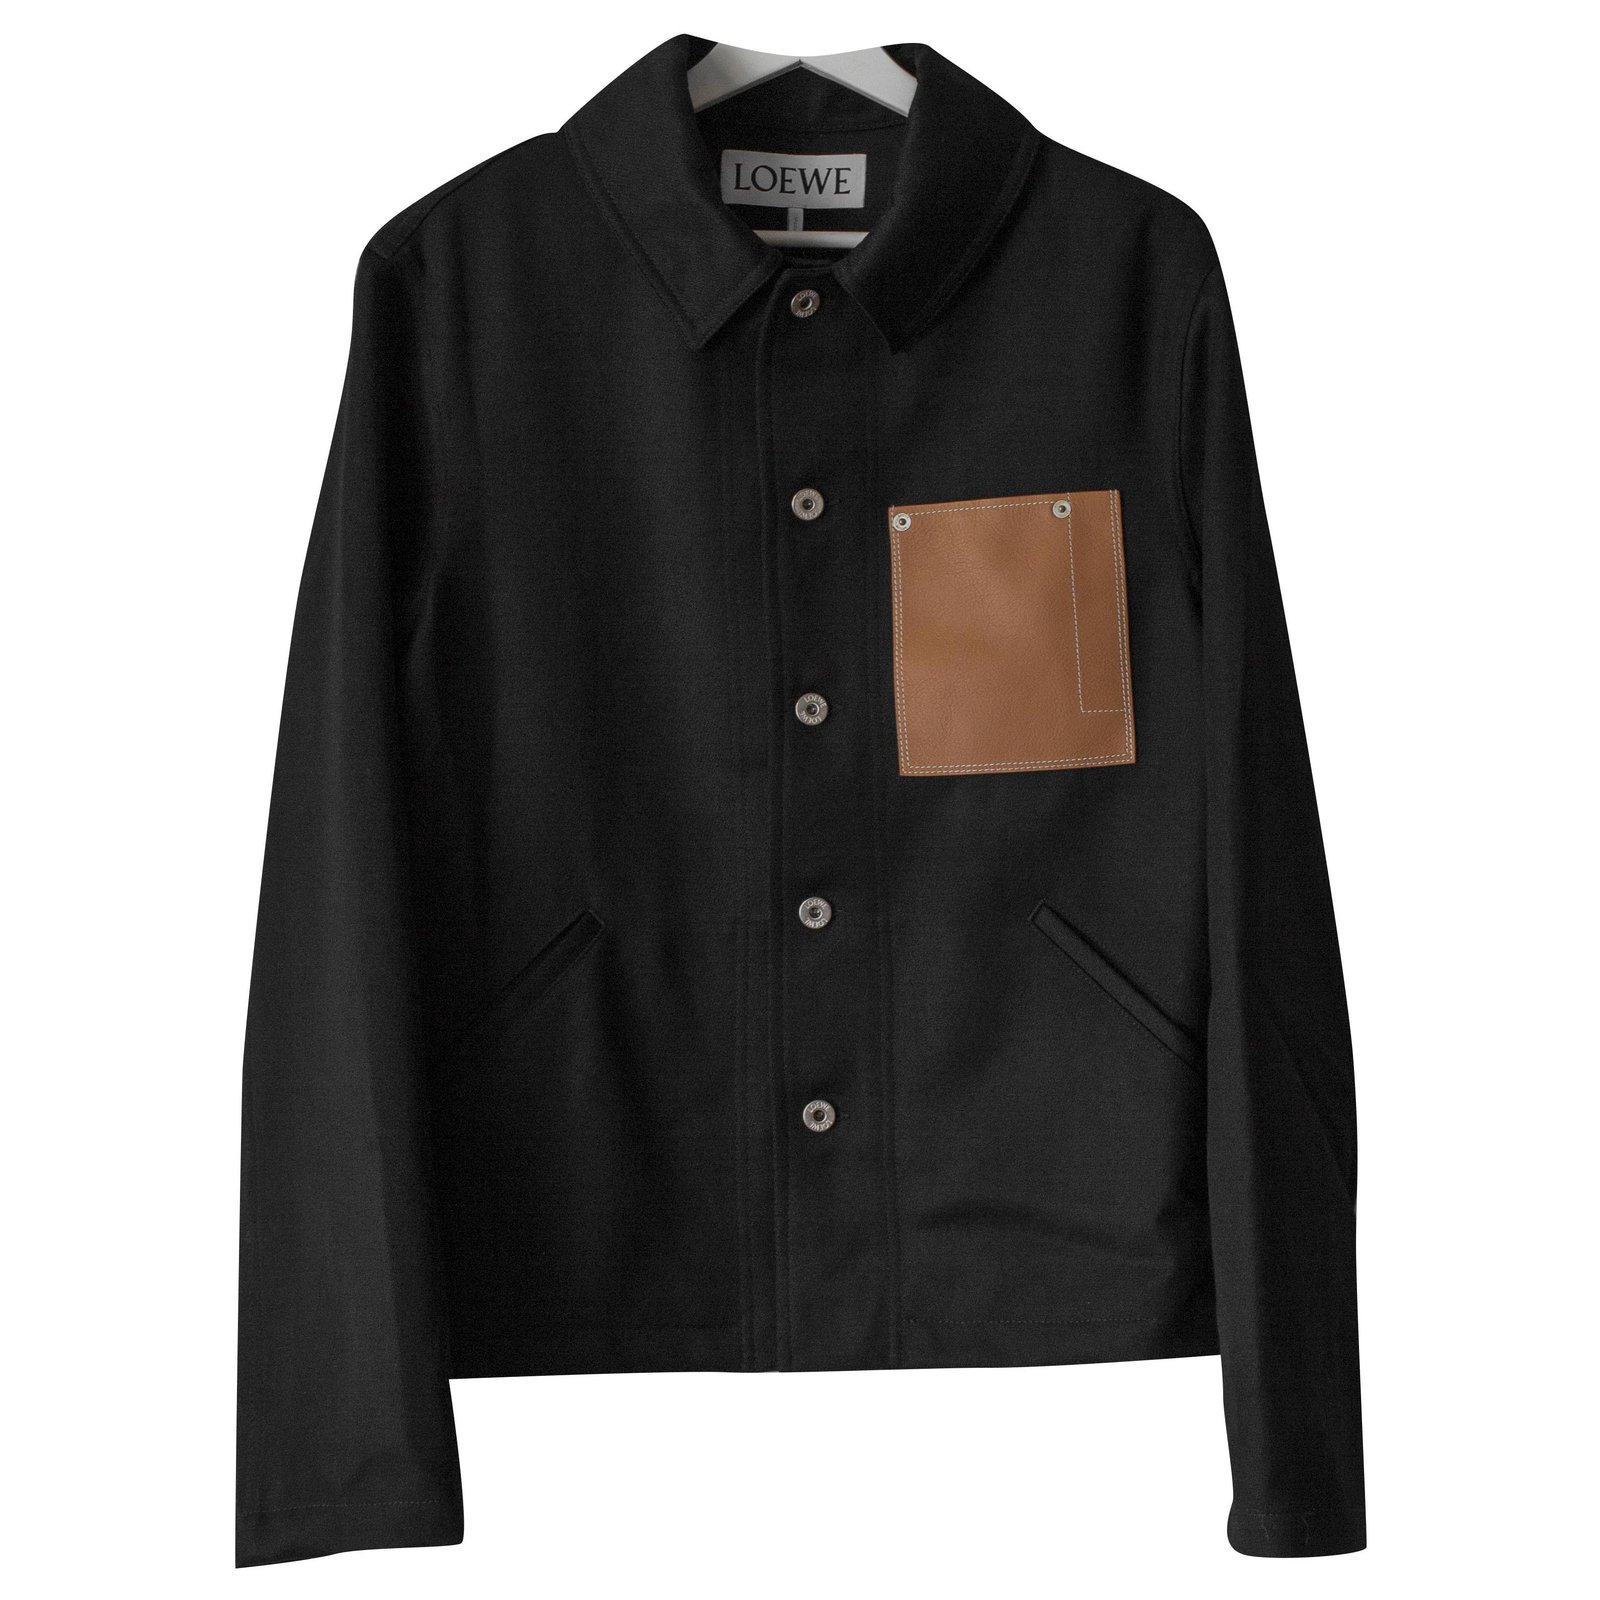 Loewe black wool jacket with leather pocket